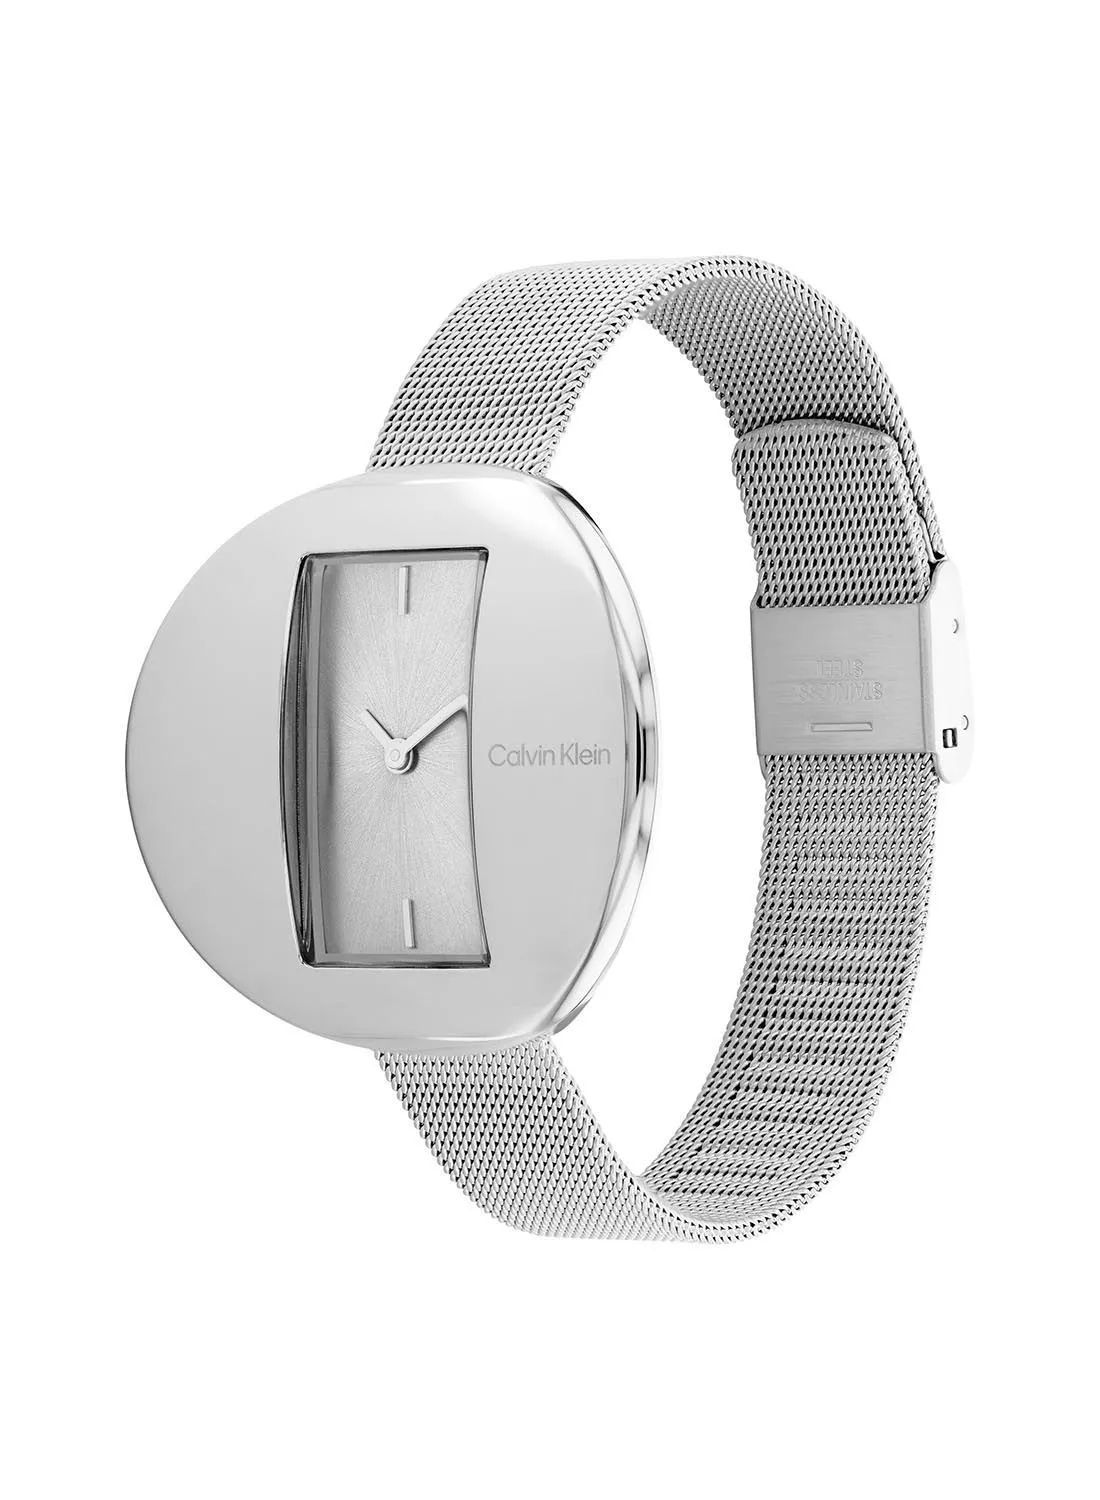 CALVIN KLEIN Women's Analog Round Waterproof  Wrist Watch With Stainless Steel 25200016